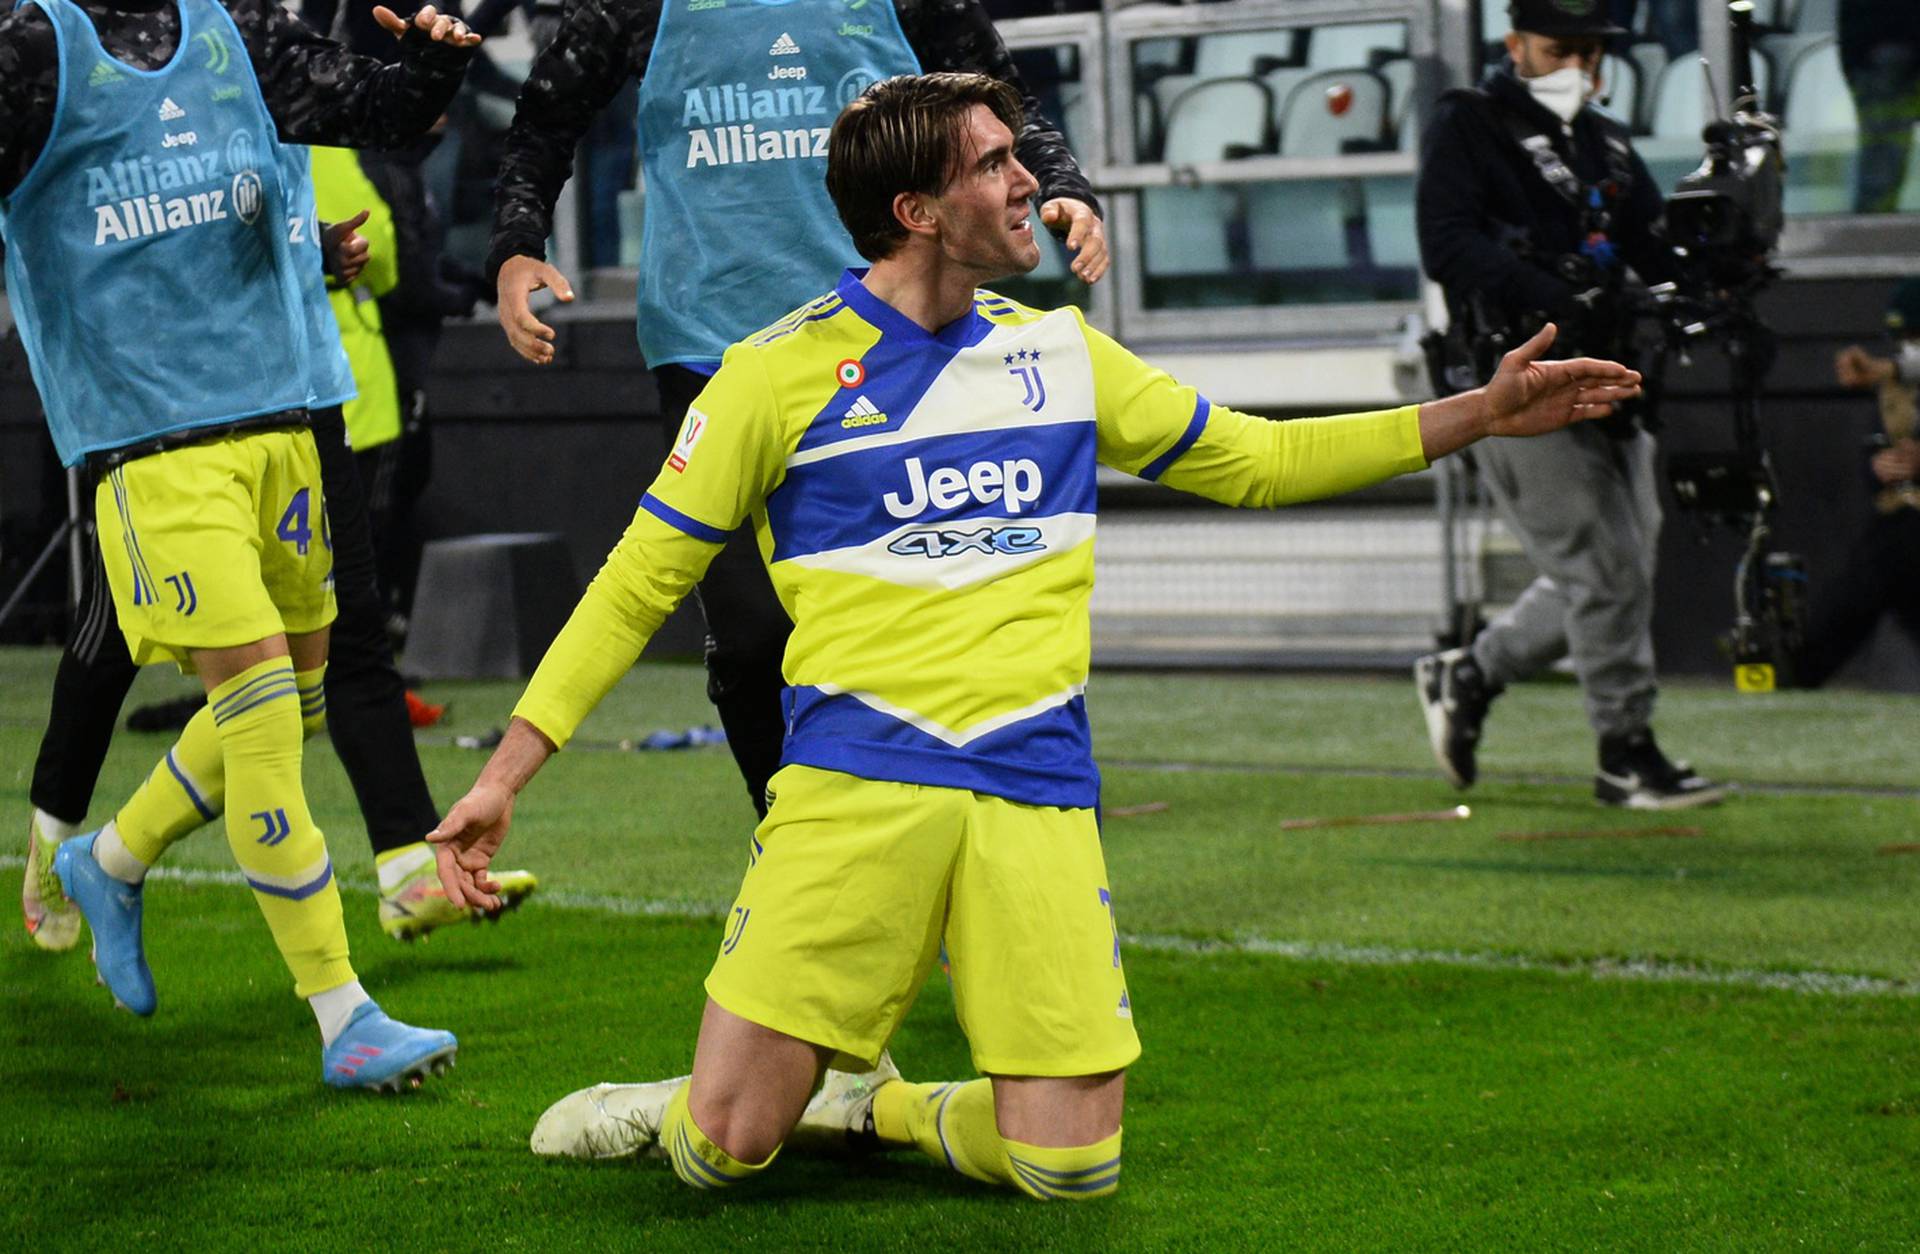 Coppa Italia – Quarter Final - Juventus v U.S. Sassuolo